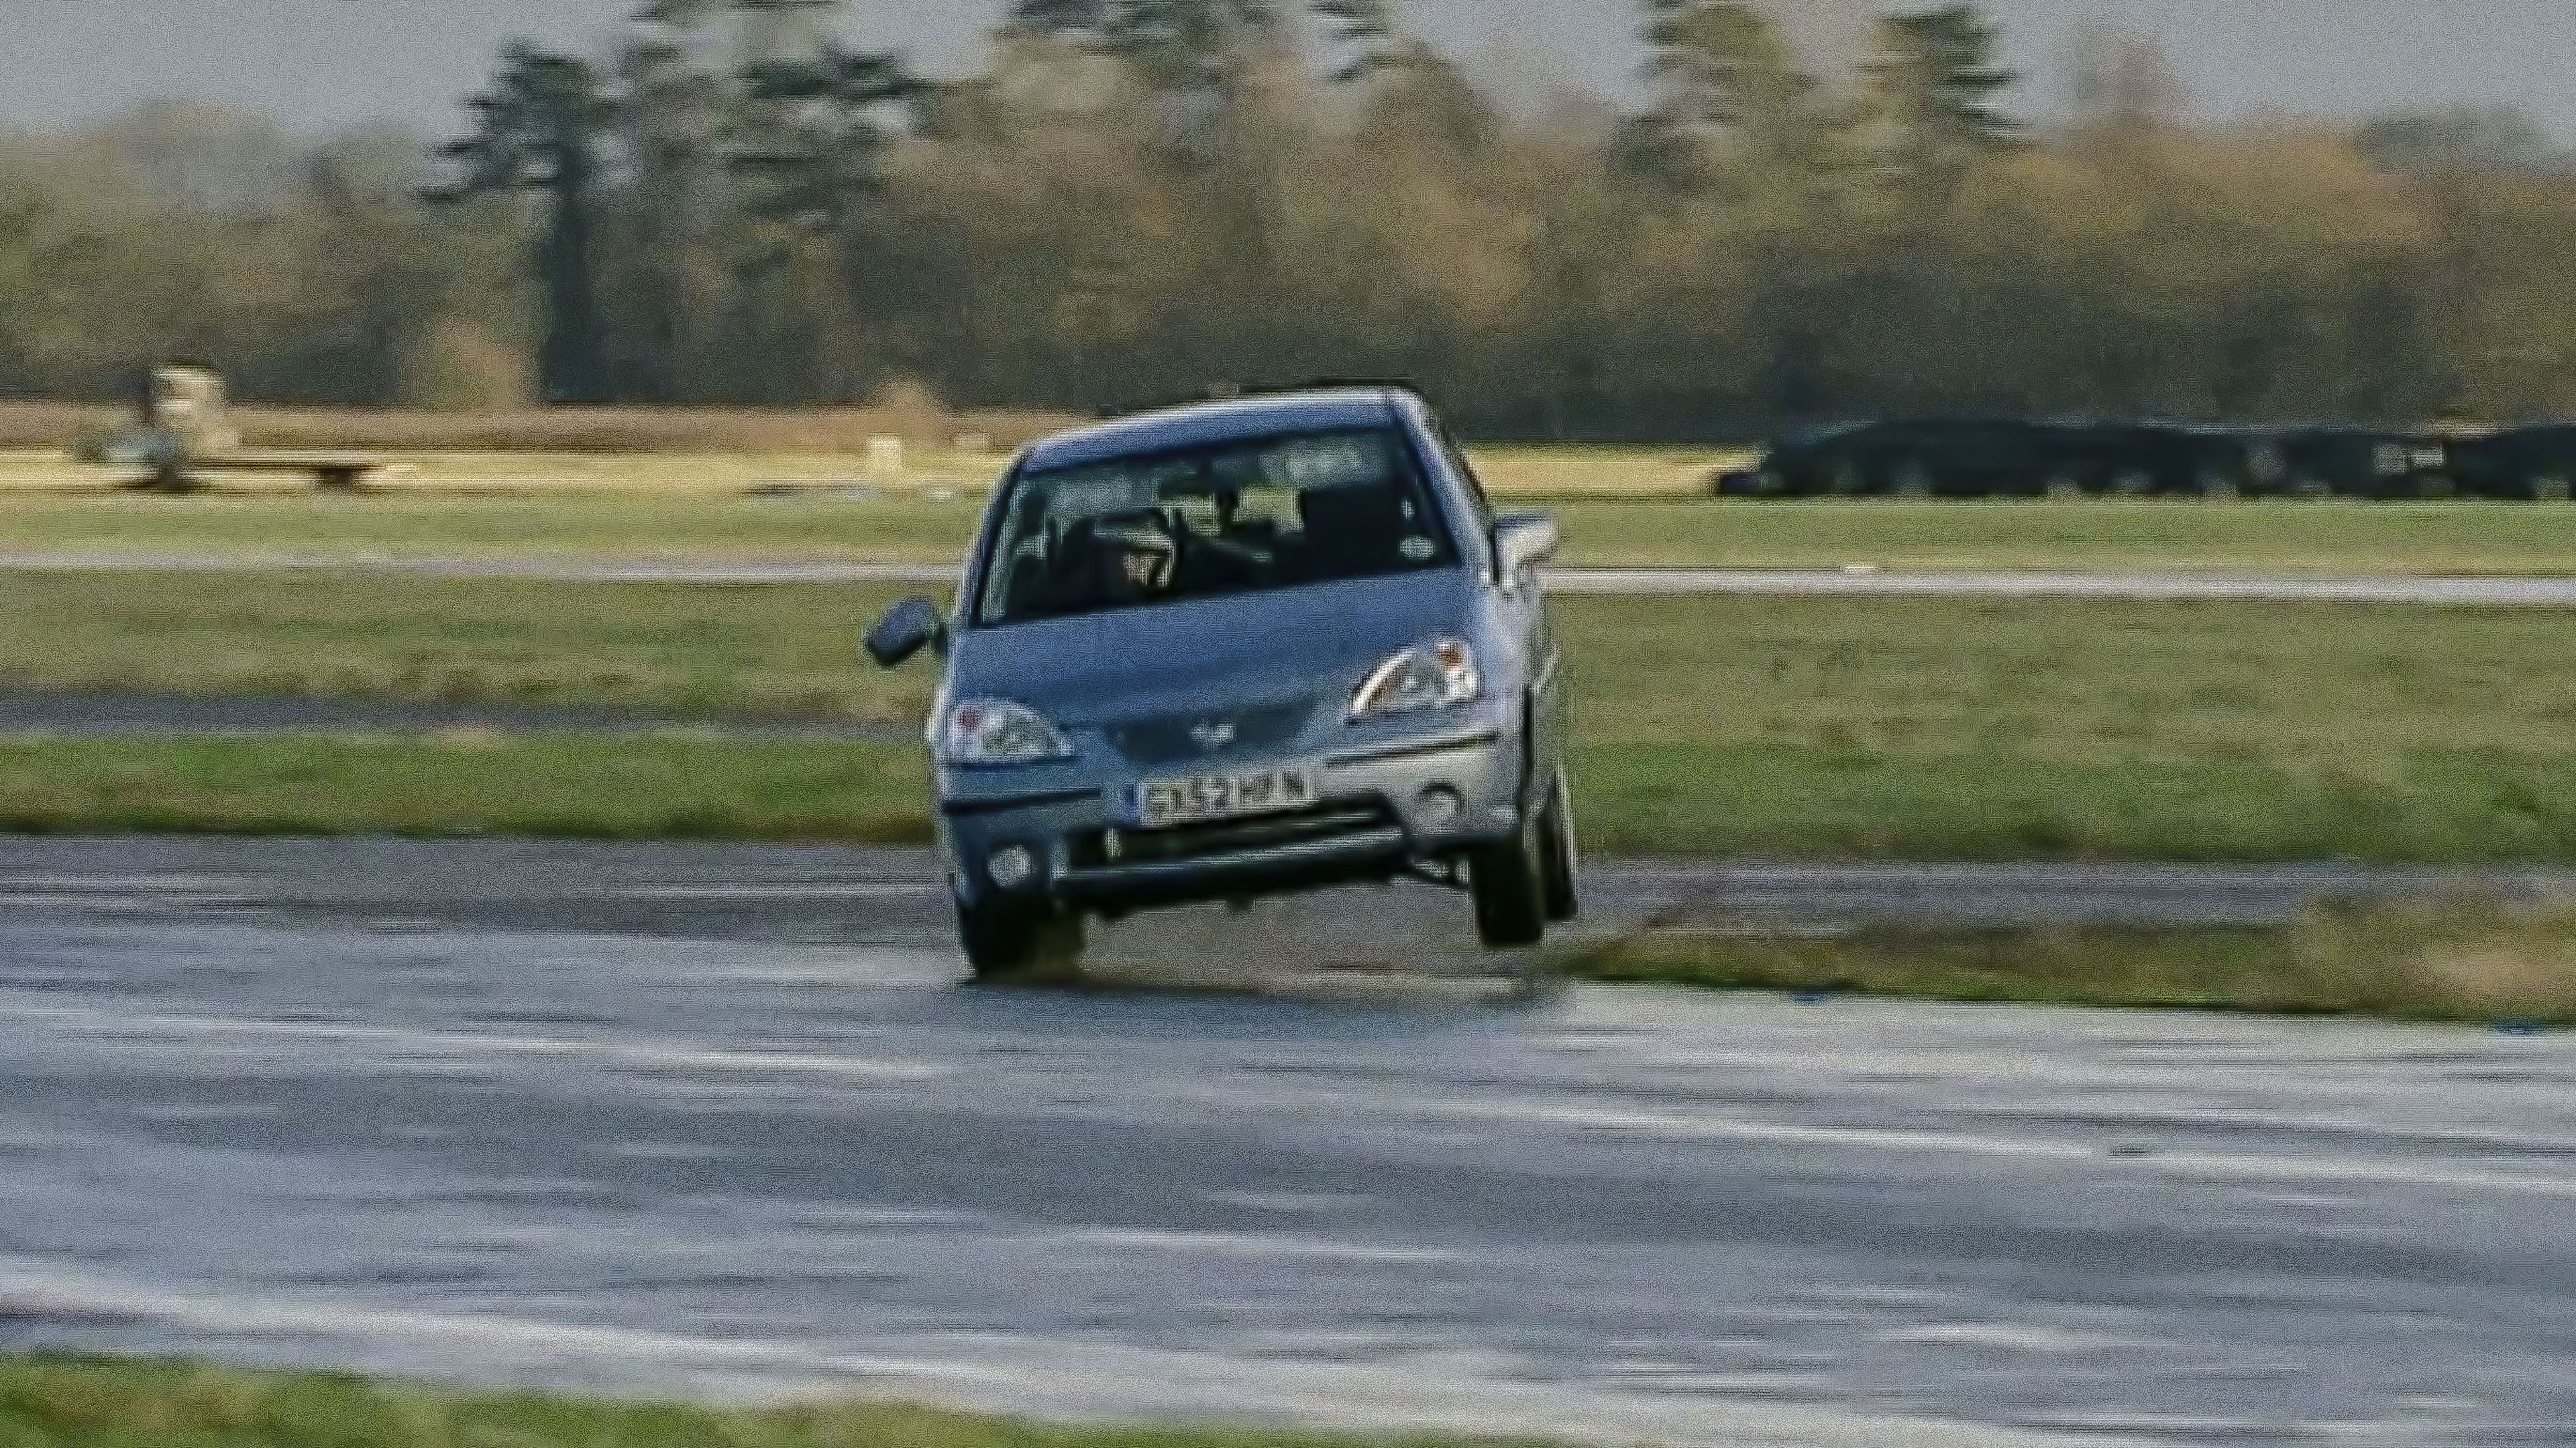 Michael Gambon, en la última curva del circuito de Top Gear con un Suzuki Liana